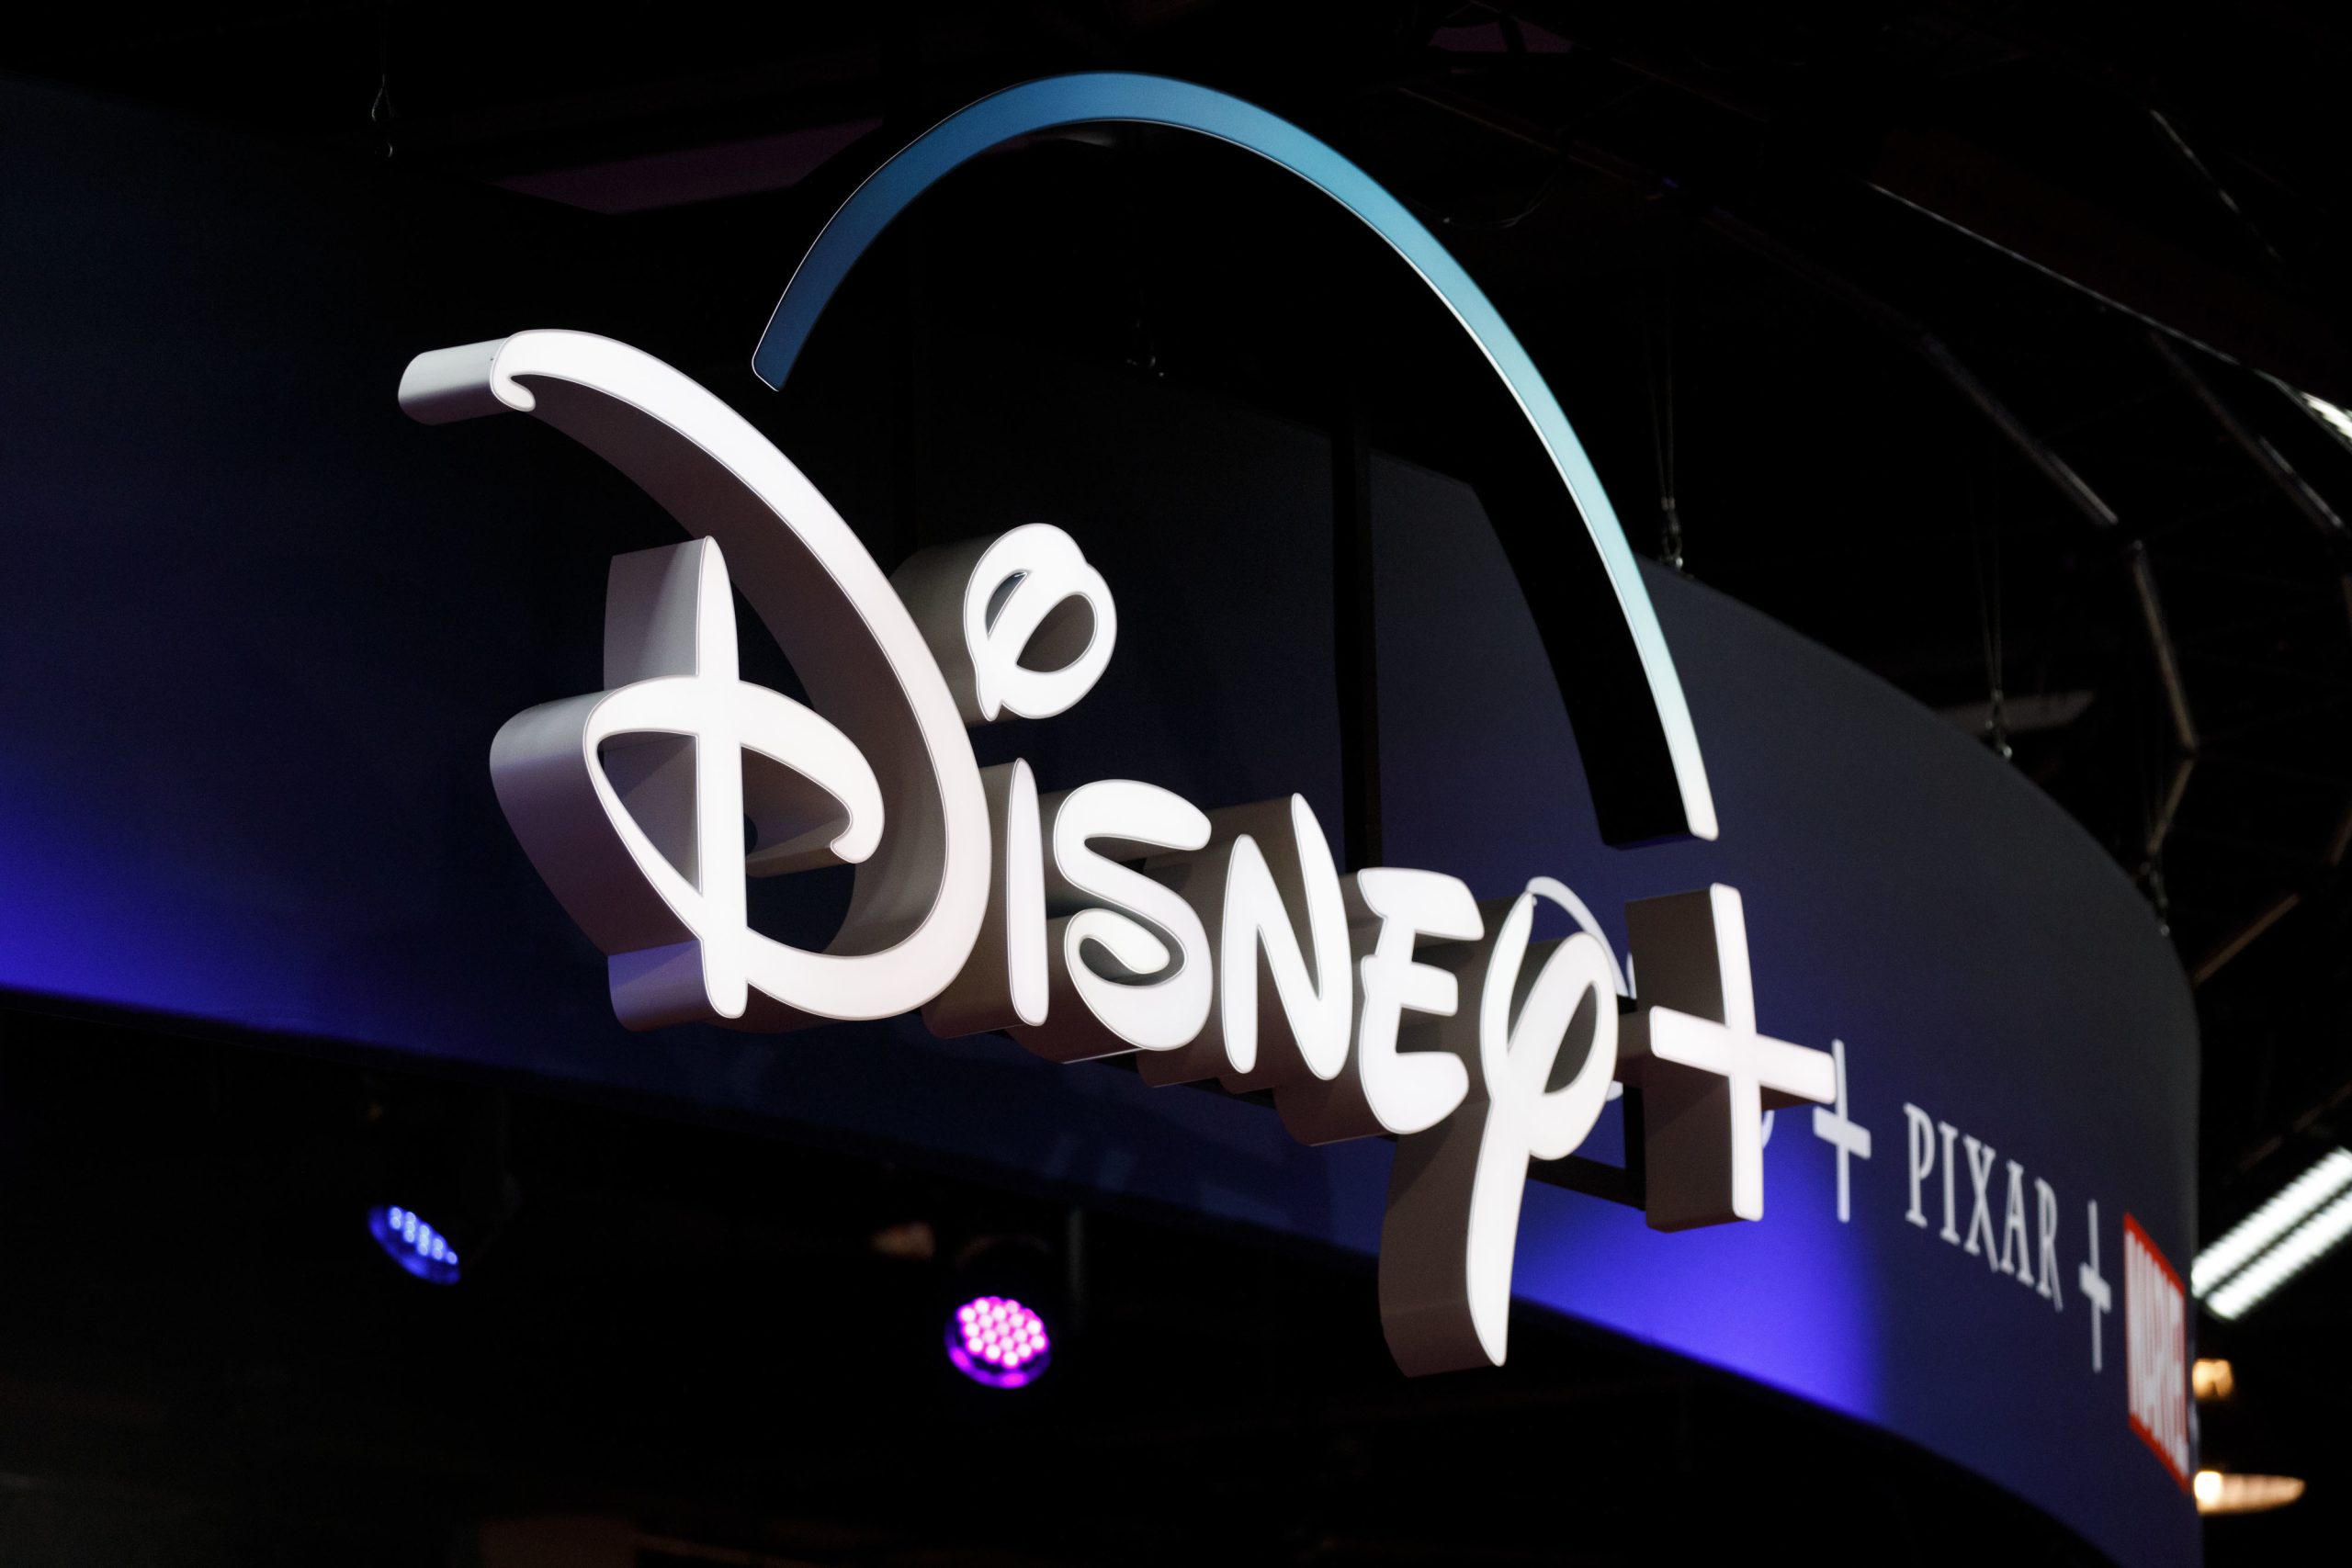 Disney+ ar putea oferi canale care transmit în continuu